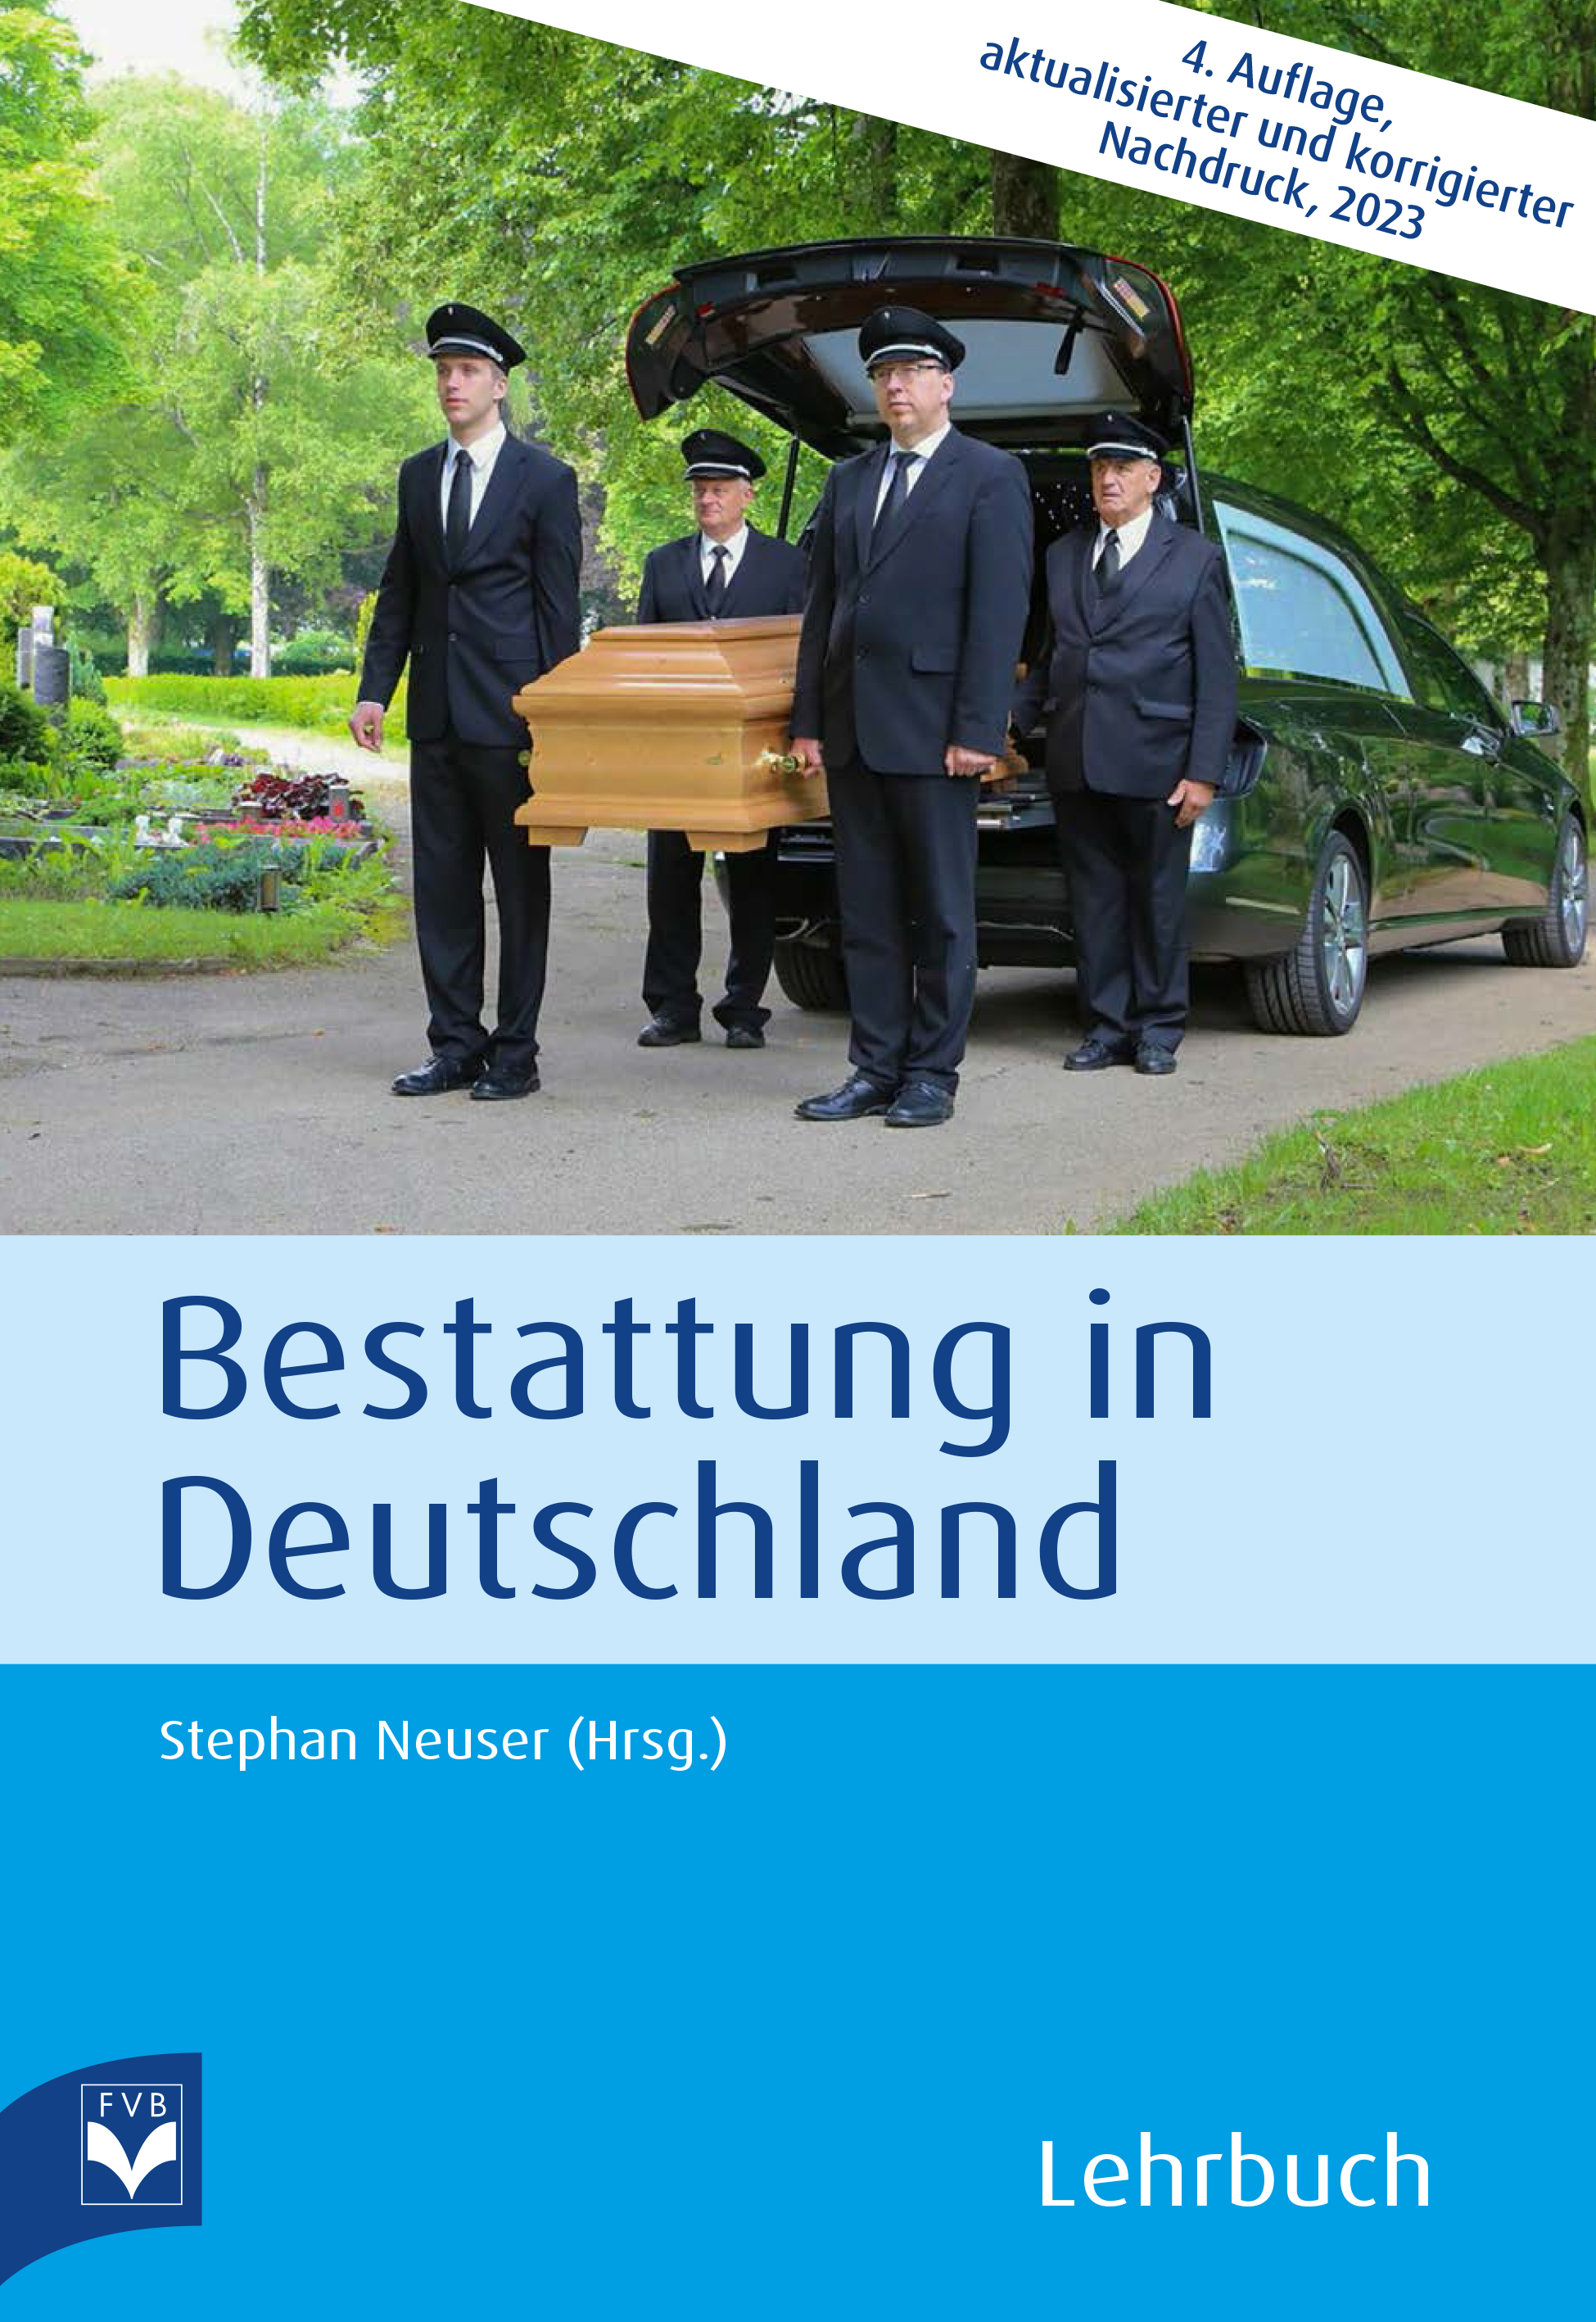 Bestattung in Deutschland – Lehrbuch 